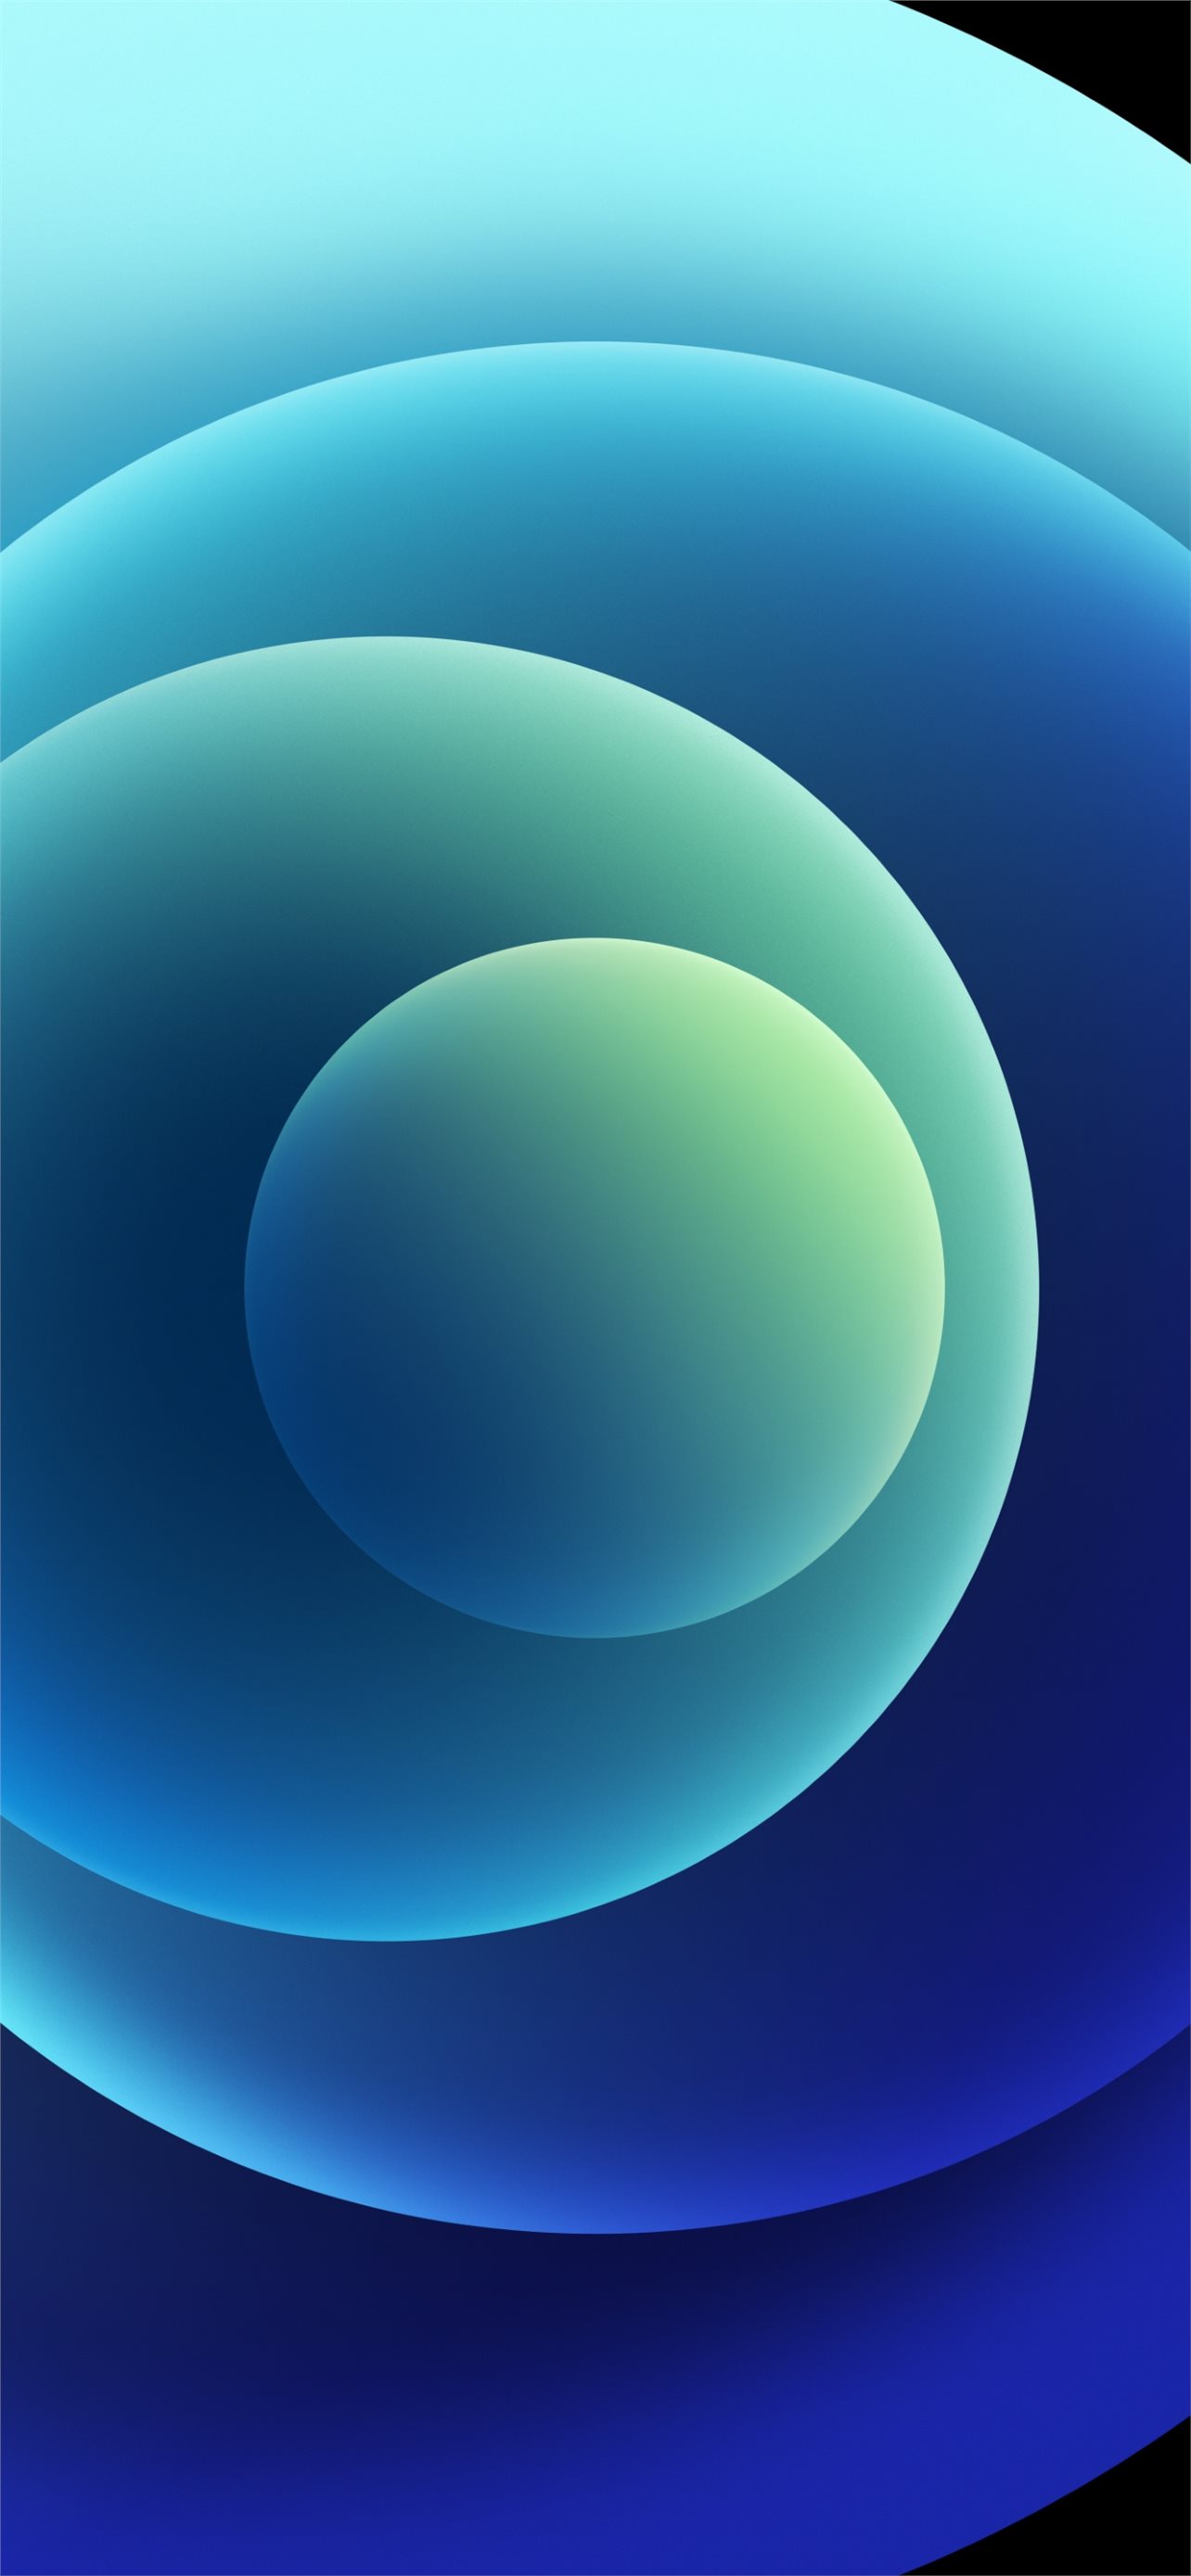 Với hình nền iPhone 12 màu sắc hoa tròn xanh, người dùng sẽ nhận được sự tươi mới và năng động cho điện thoại của mình. Màu xanh tươi trên nền trắng sẽ tạo nên một bức tranh tuyệt đẹp và rực rỡ trên màn hình iPhone